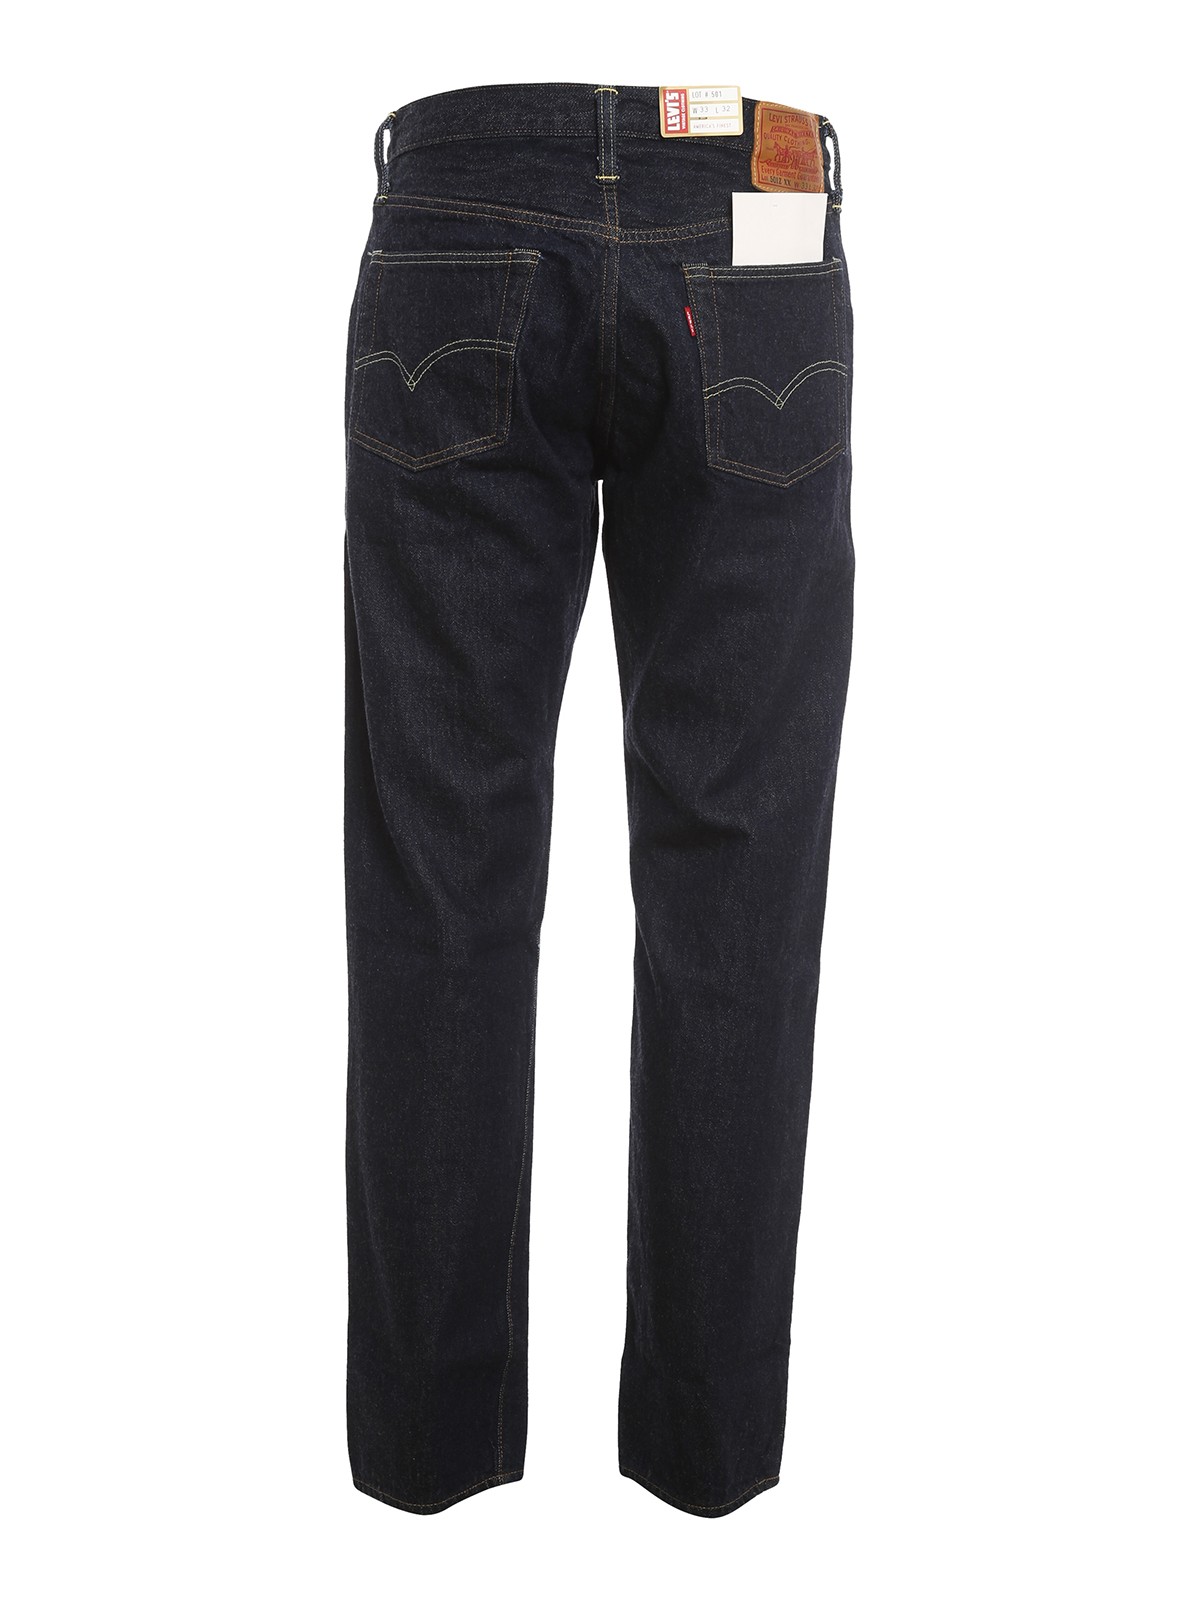 Straight leg jeans Levi'S - 1954 501z jeans - 501540091 | iKRIX.com